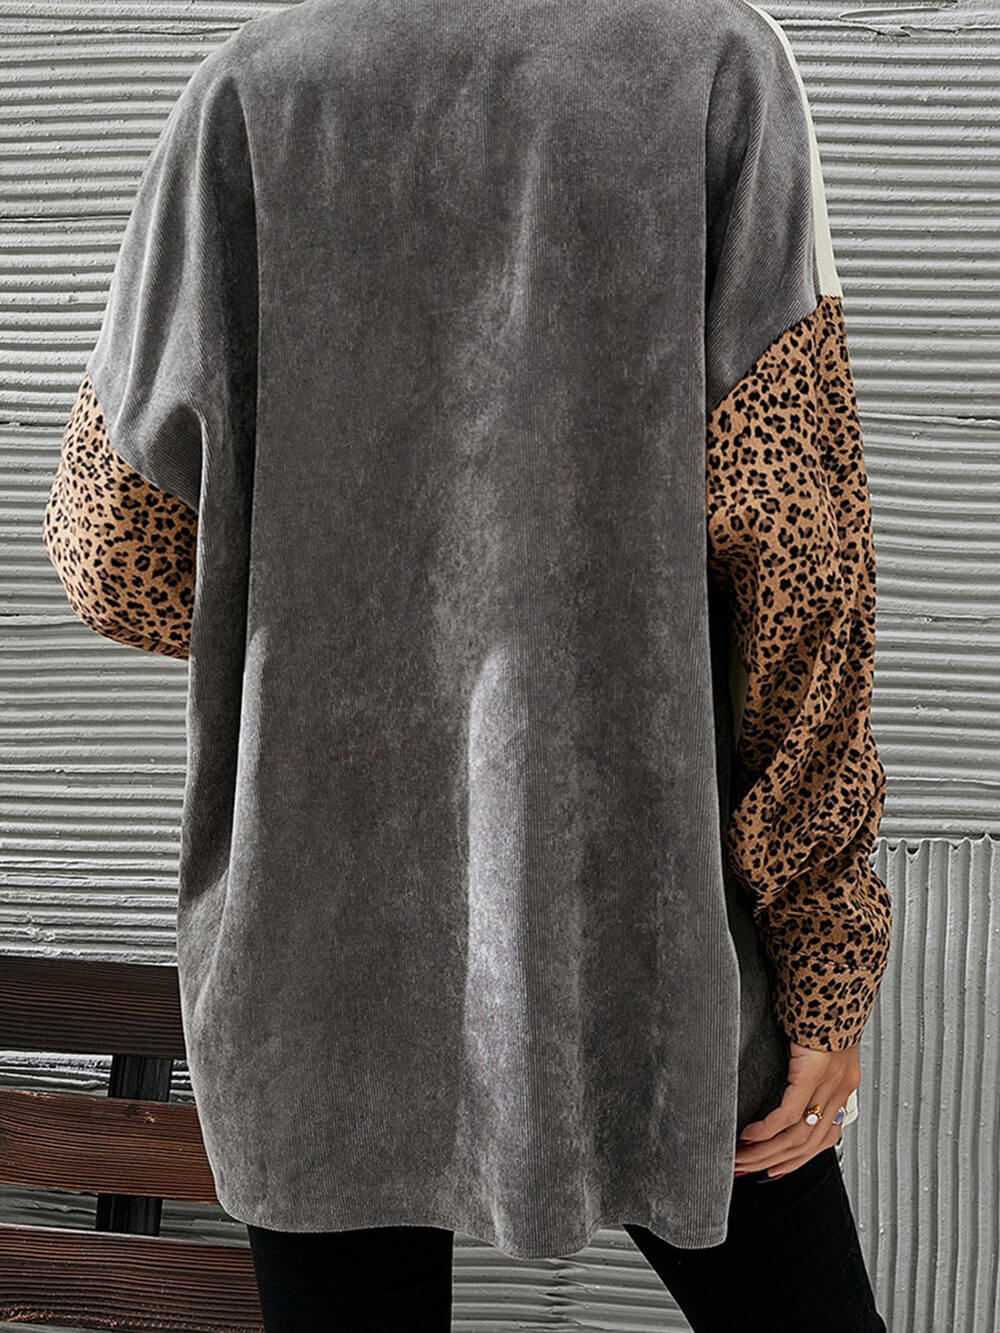 Shacket de veludo cotelê com remendos de leopardo em bloco de cor cinza